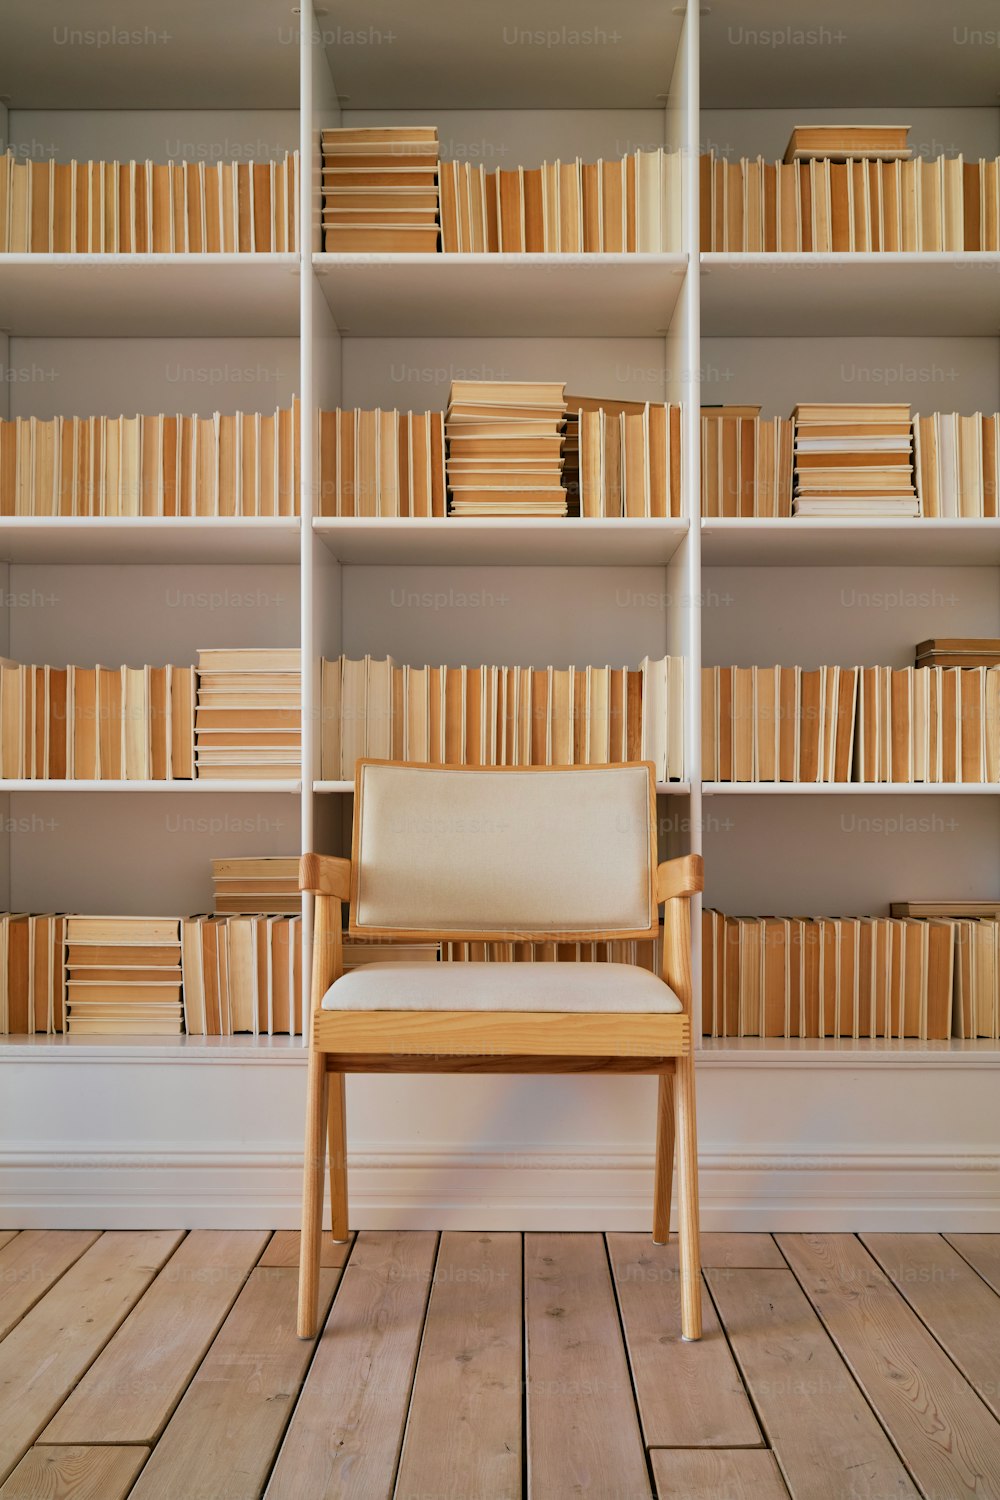 una silla sentada frente a una estantería llena de libros